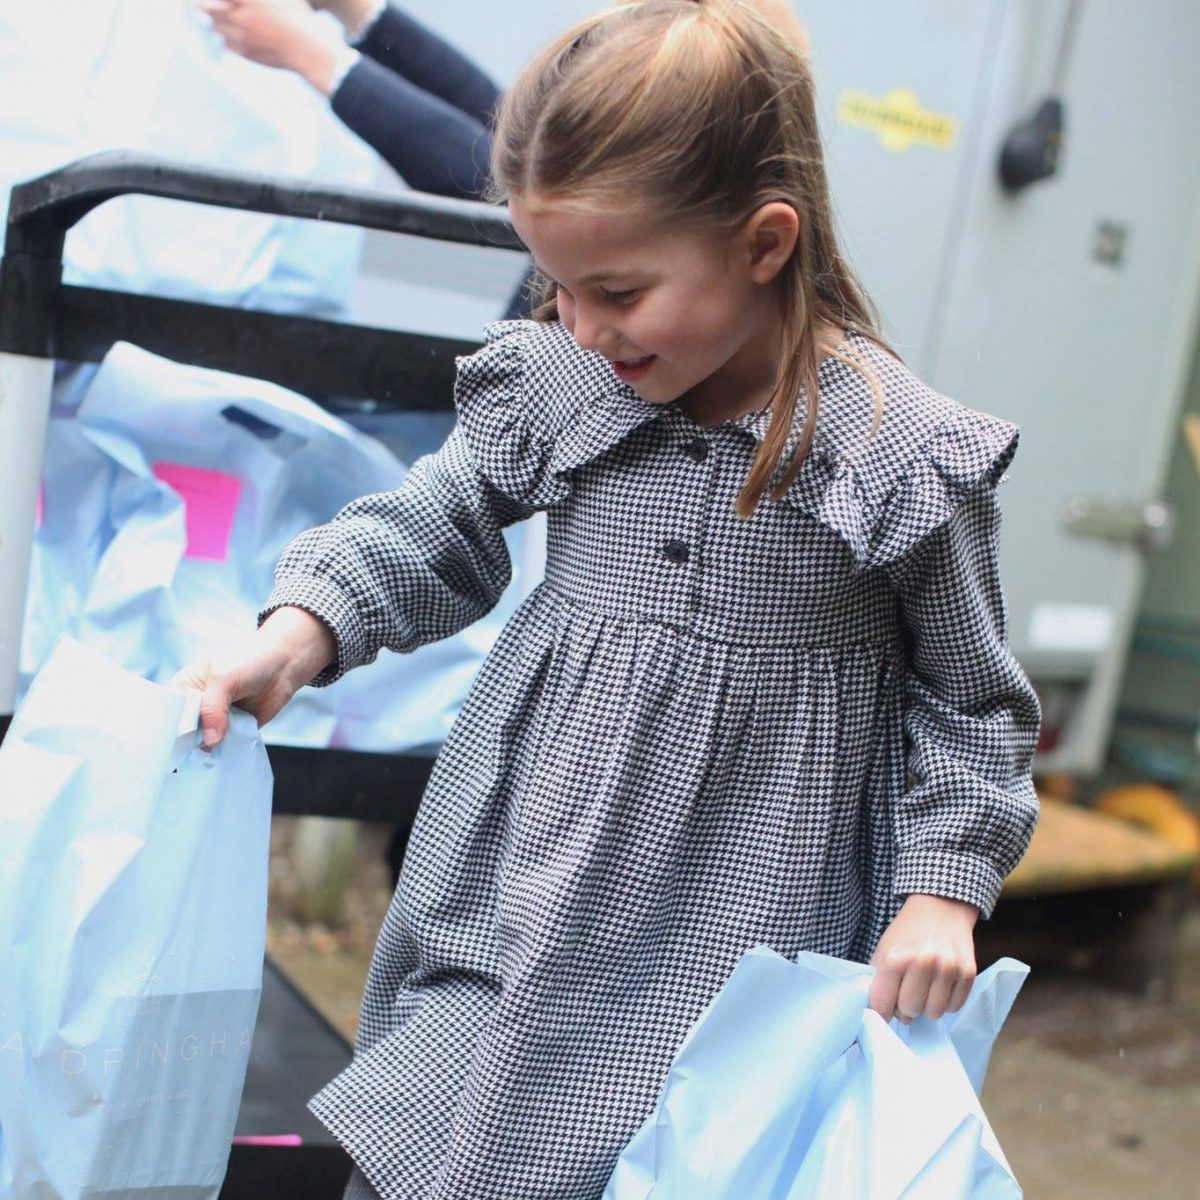 psicologiasdobrasil.com.br - Família Real divulga fotos da Princesa Charlotte distribuindo alimentos aos necessitados